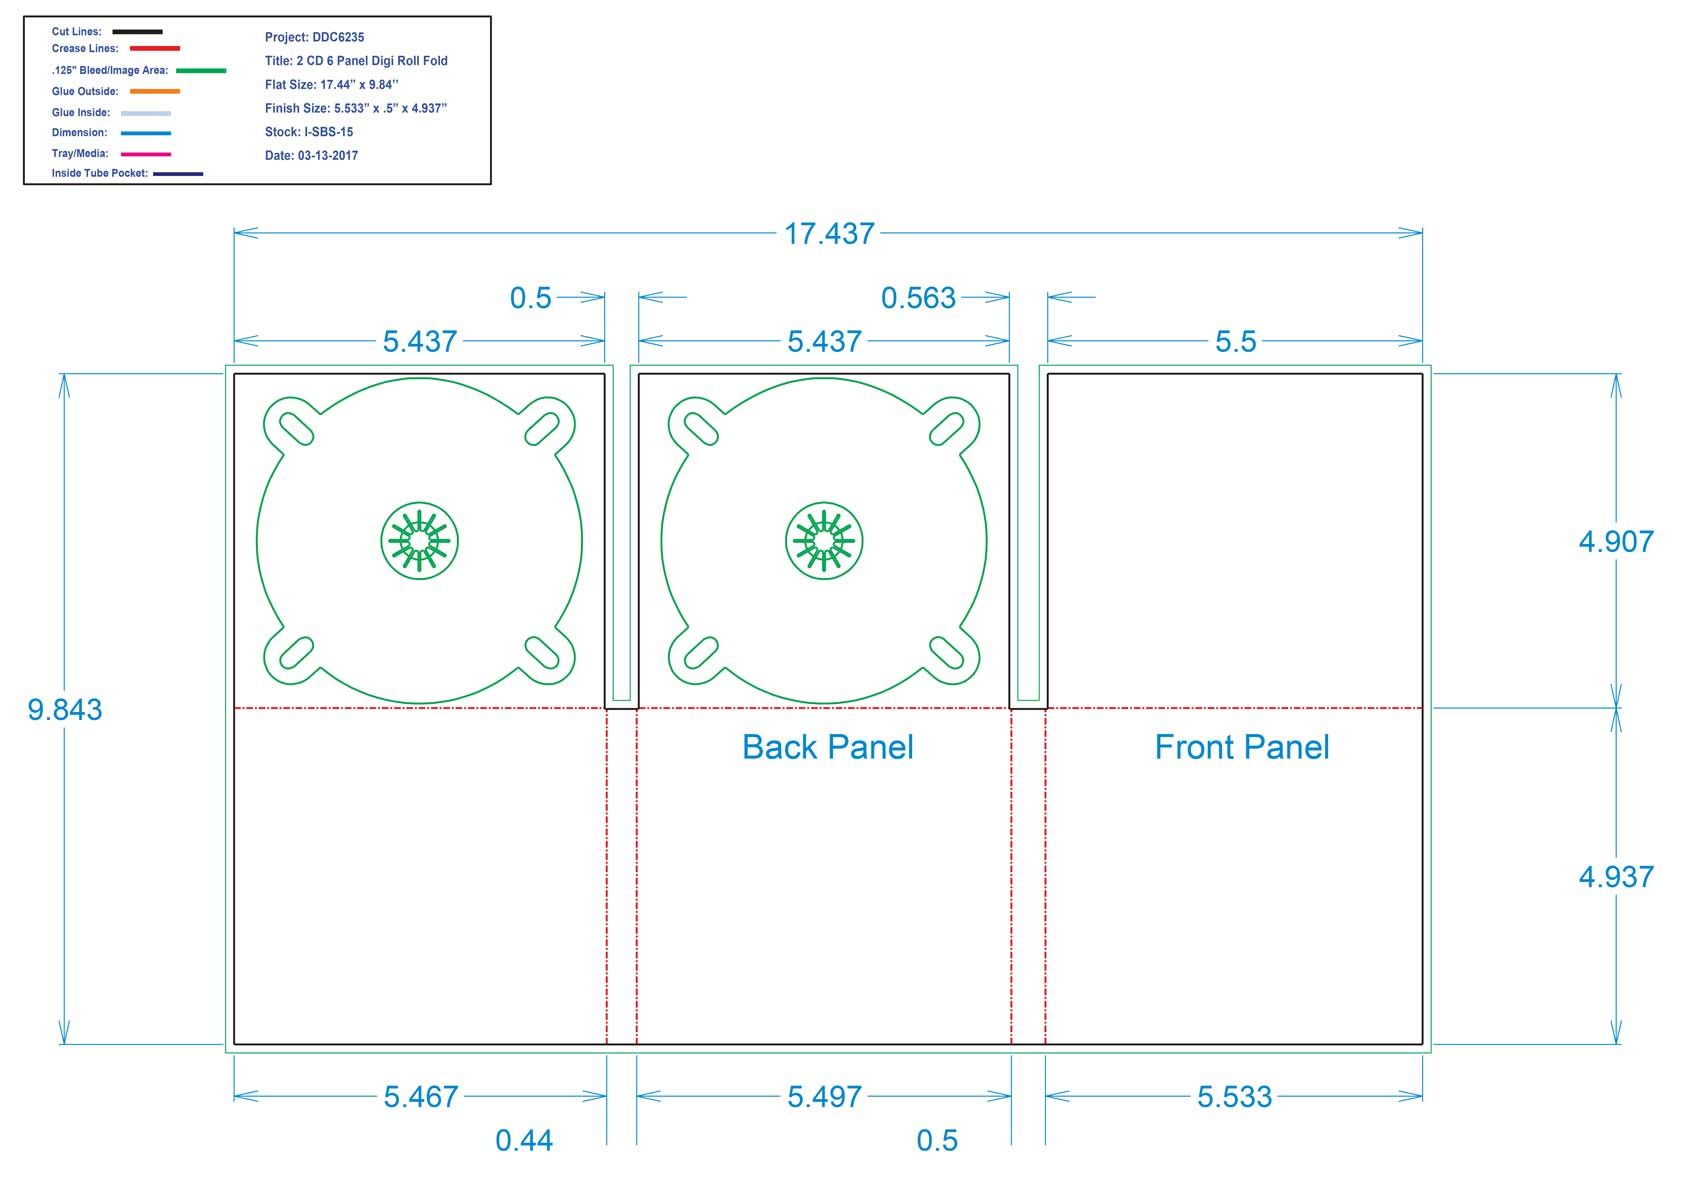 DDC6235 - 6 Panel Digi Two Trays Roll Fold